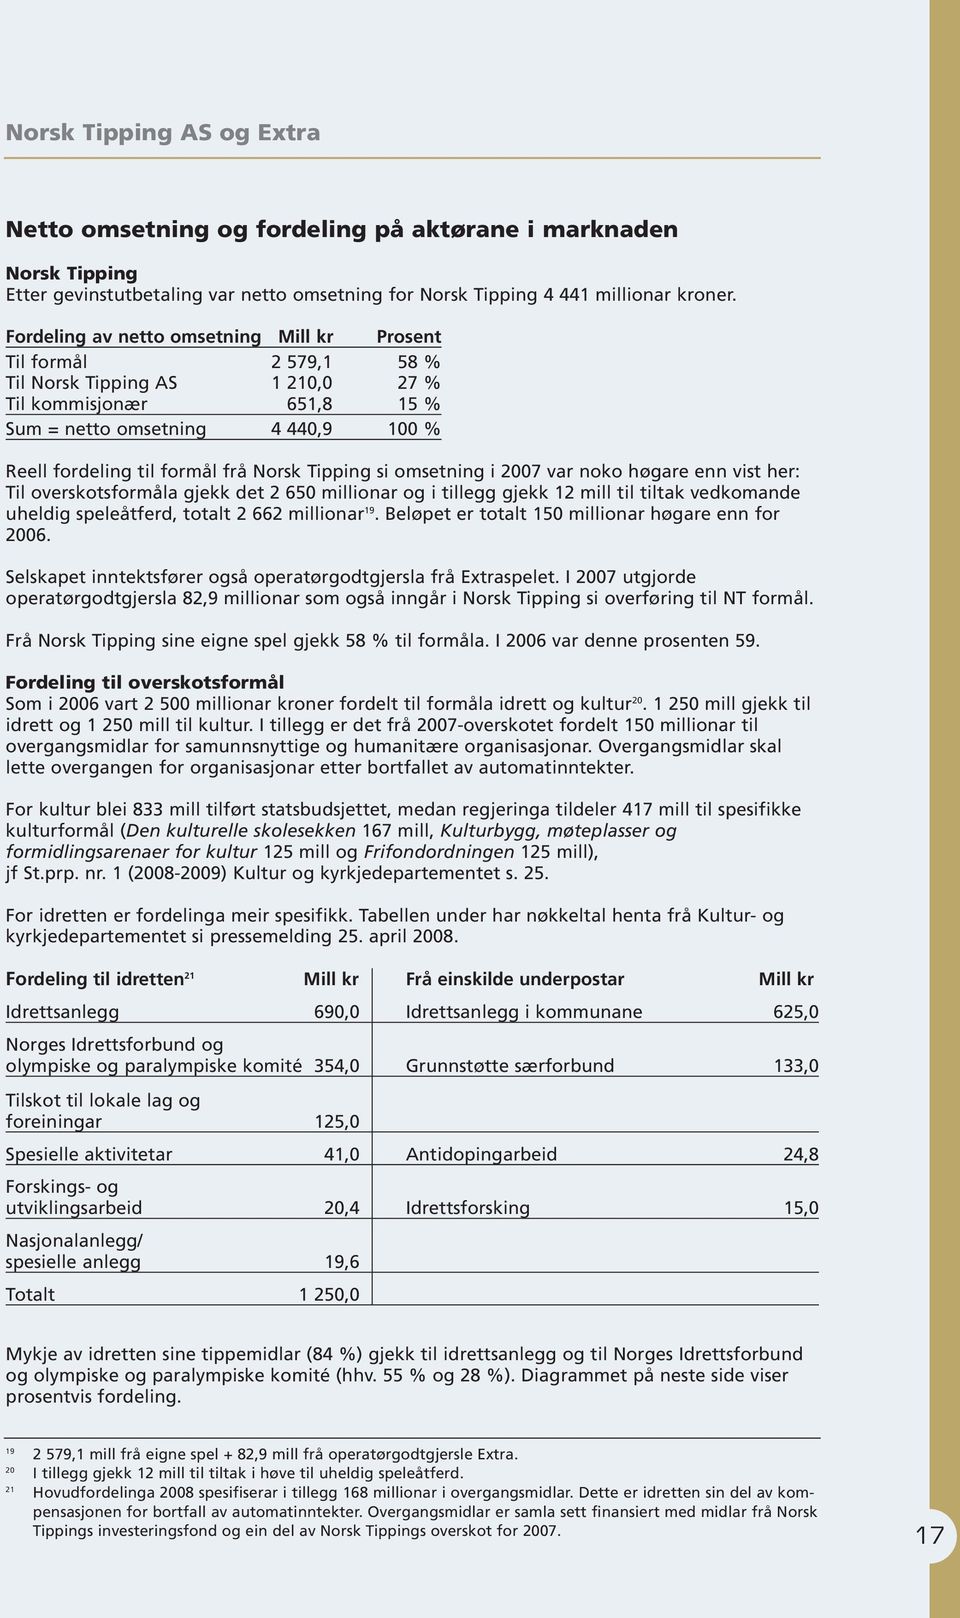 Norsk Tipping si omsetning i 2007 var noko høgare enn vist her: Til overskotsformåla gjekk det 2 650 millionar og i tillegg gjekk 12 mill til tiltak vedkomande uheldig speleåtferd, totalt 2 662